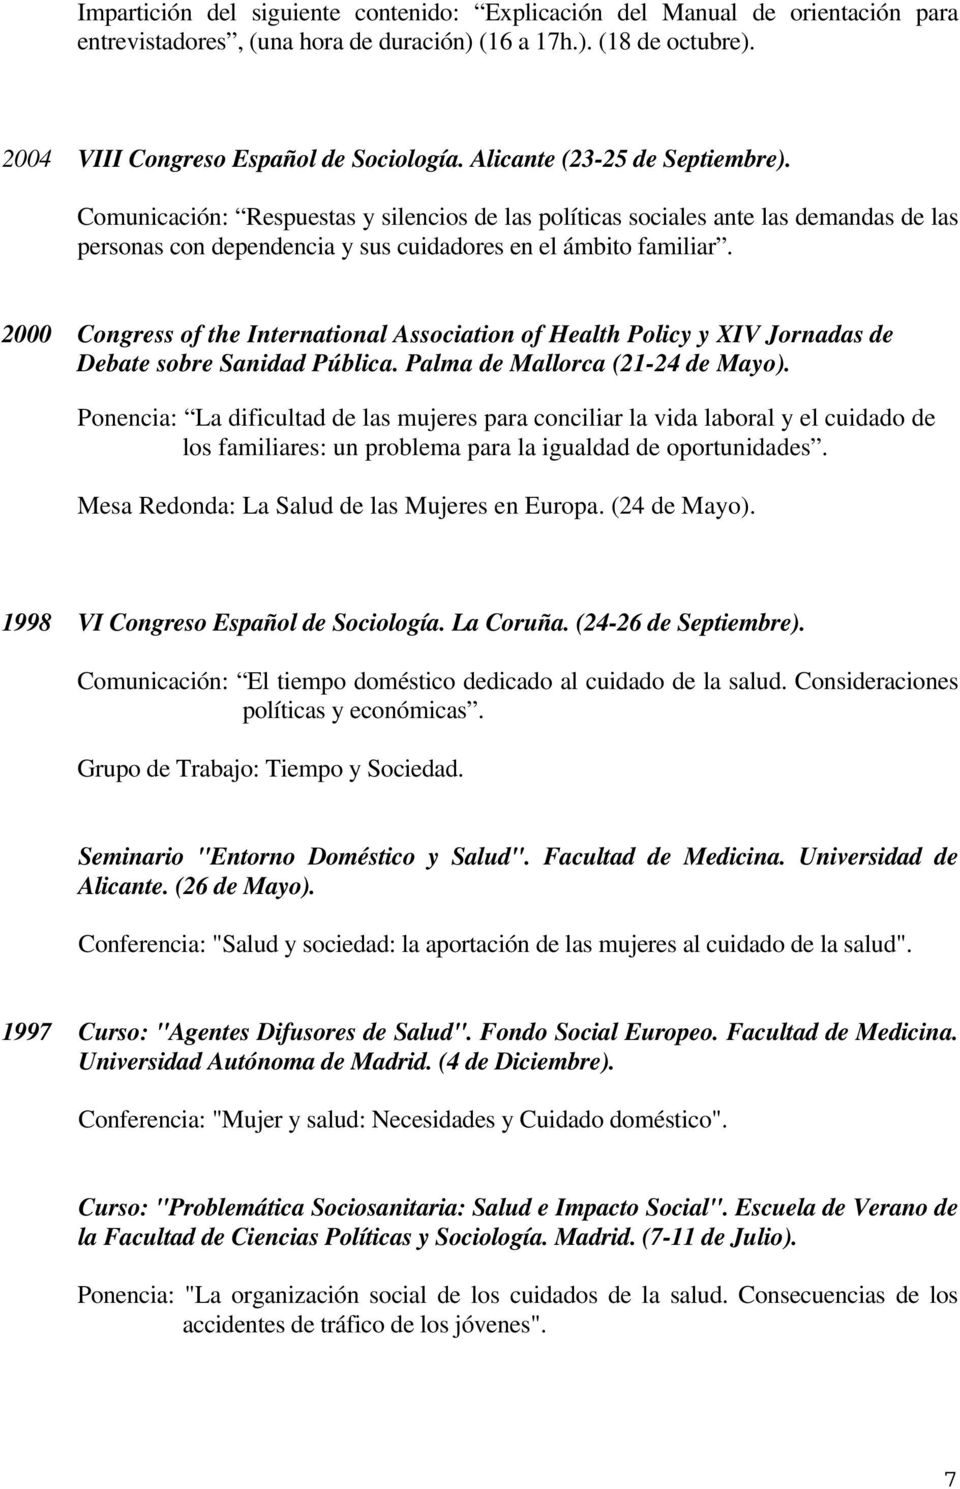 2000 Congress of the International Association of Health Policy y XIV Jornadas de Debate sobre Sanidad Pública. Palma de Mallorca (21-24 de Mayo).